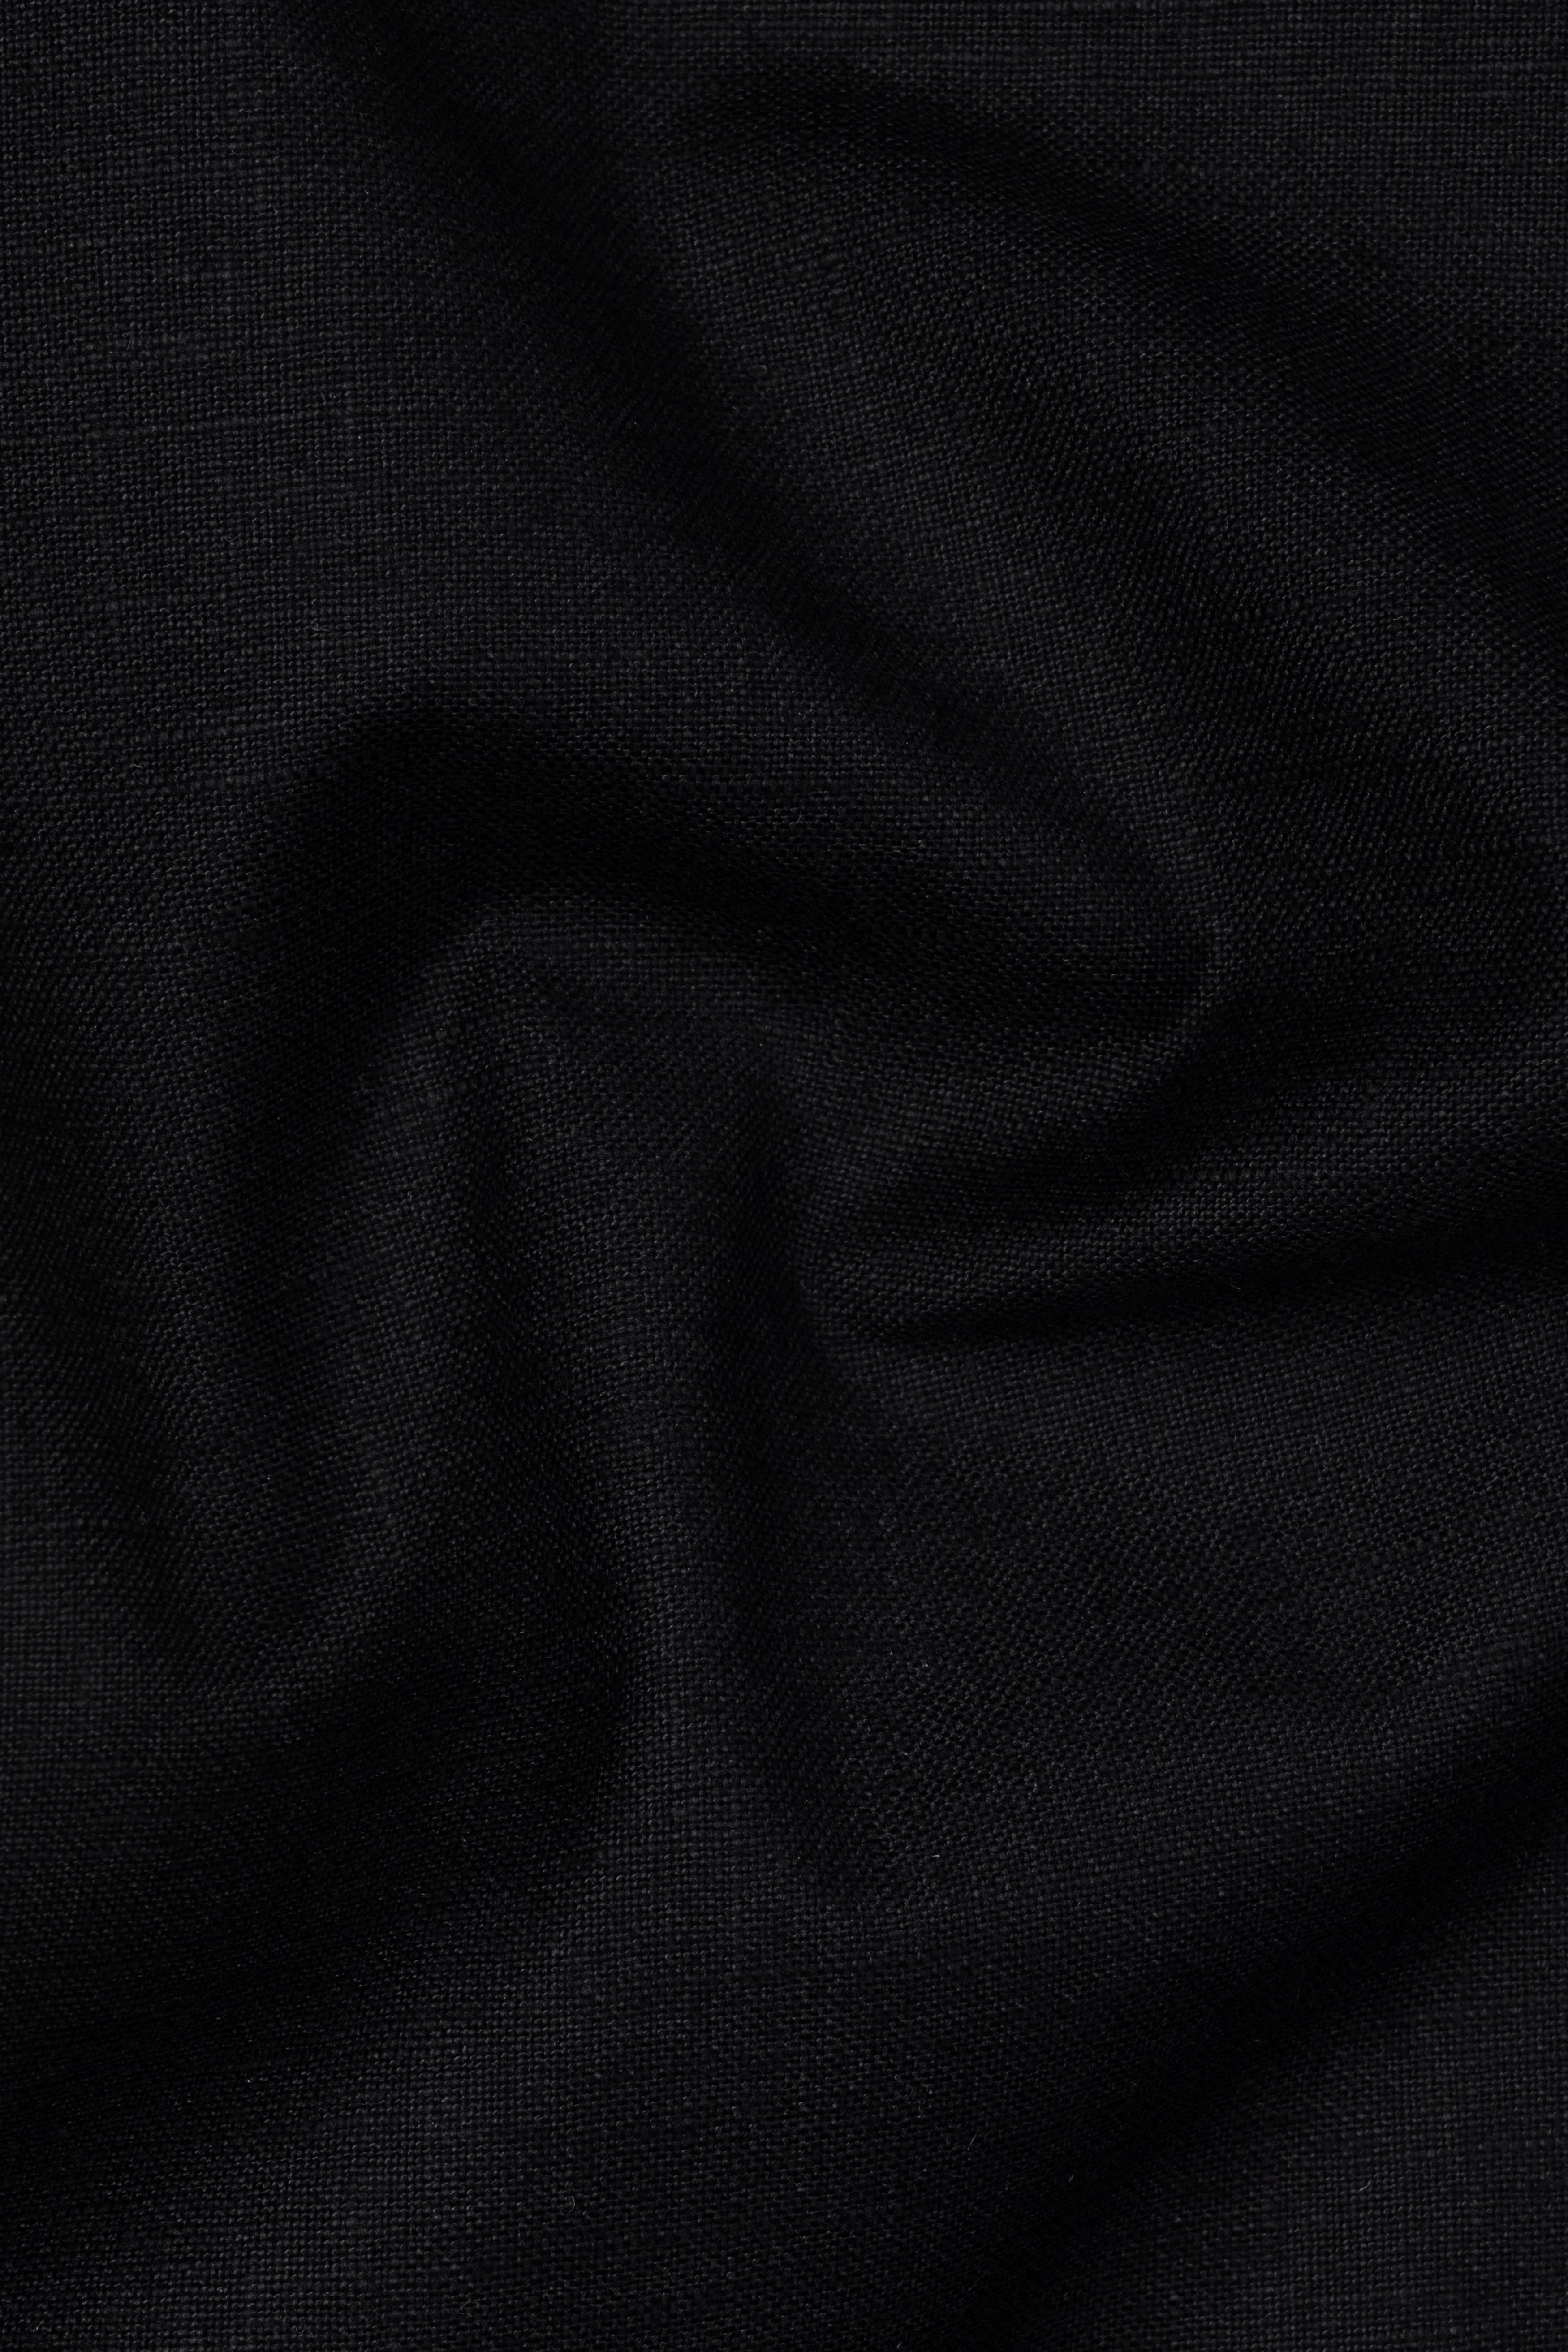 Jade Black Solid Tweed Waistcoat